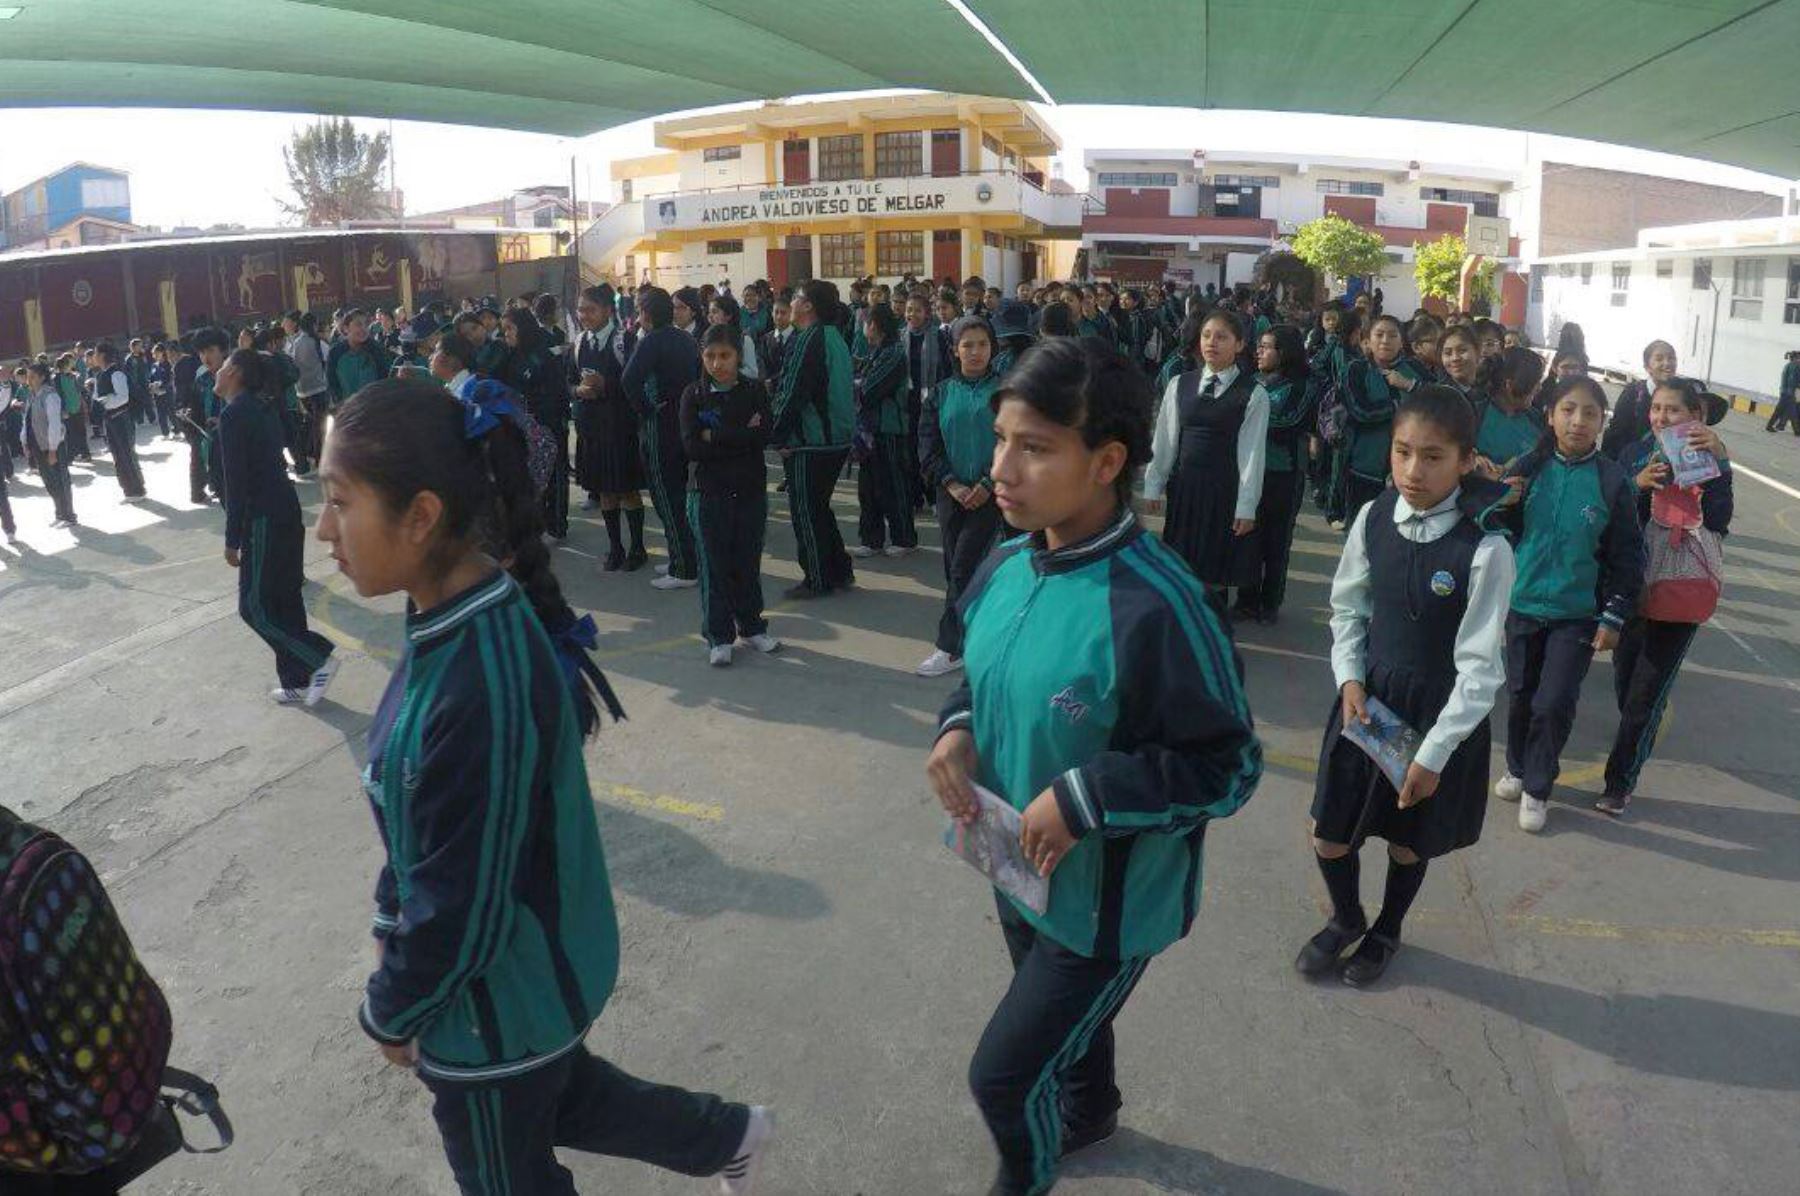 El 11 de marzo se iniciará el año escolar en Arequipa y la Policía Nacional brindará seguridad a los estudiantes.